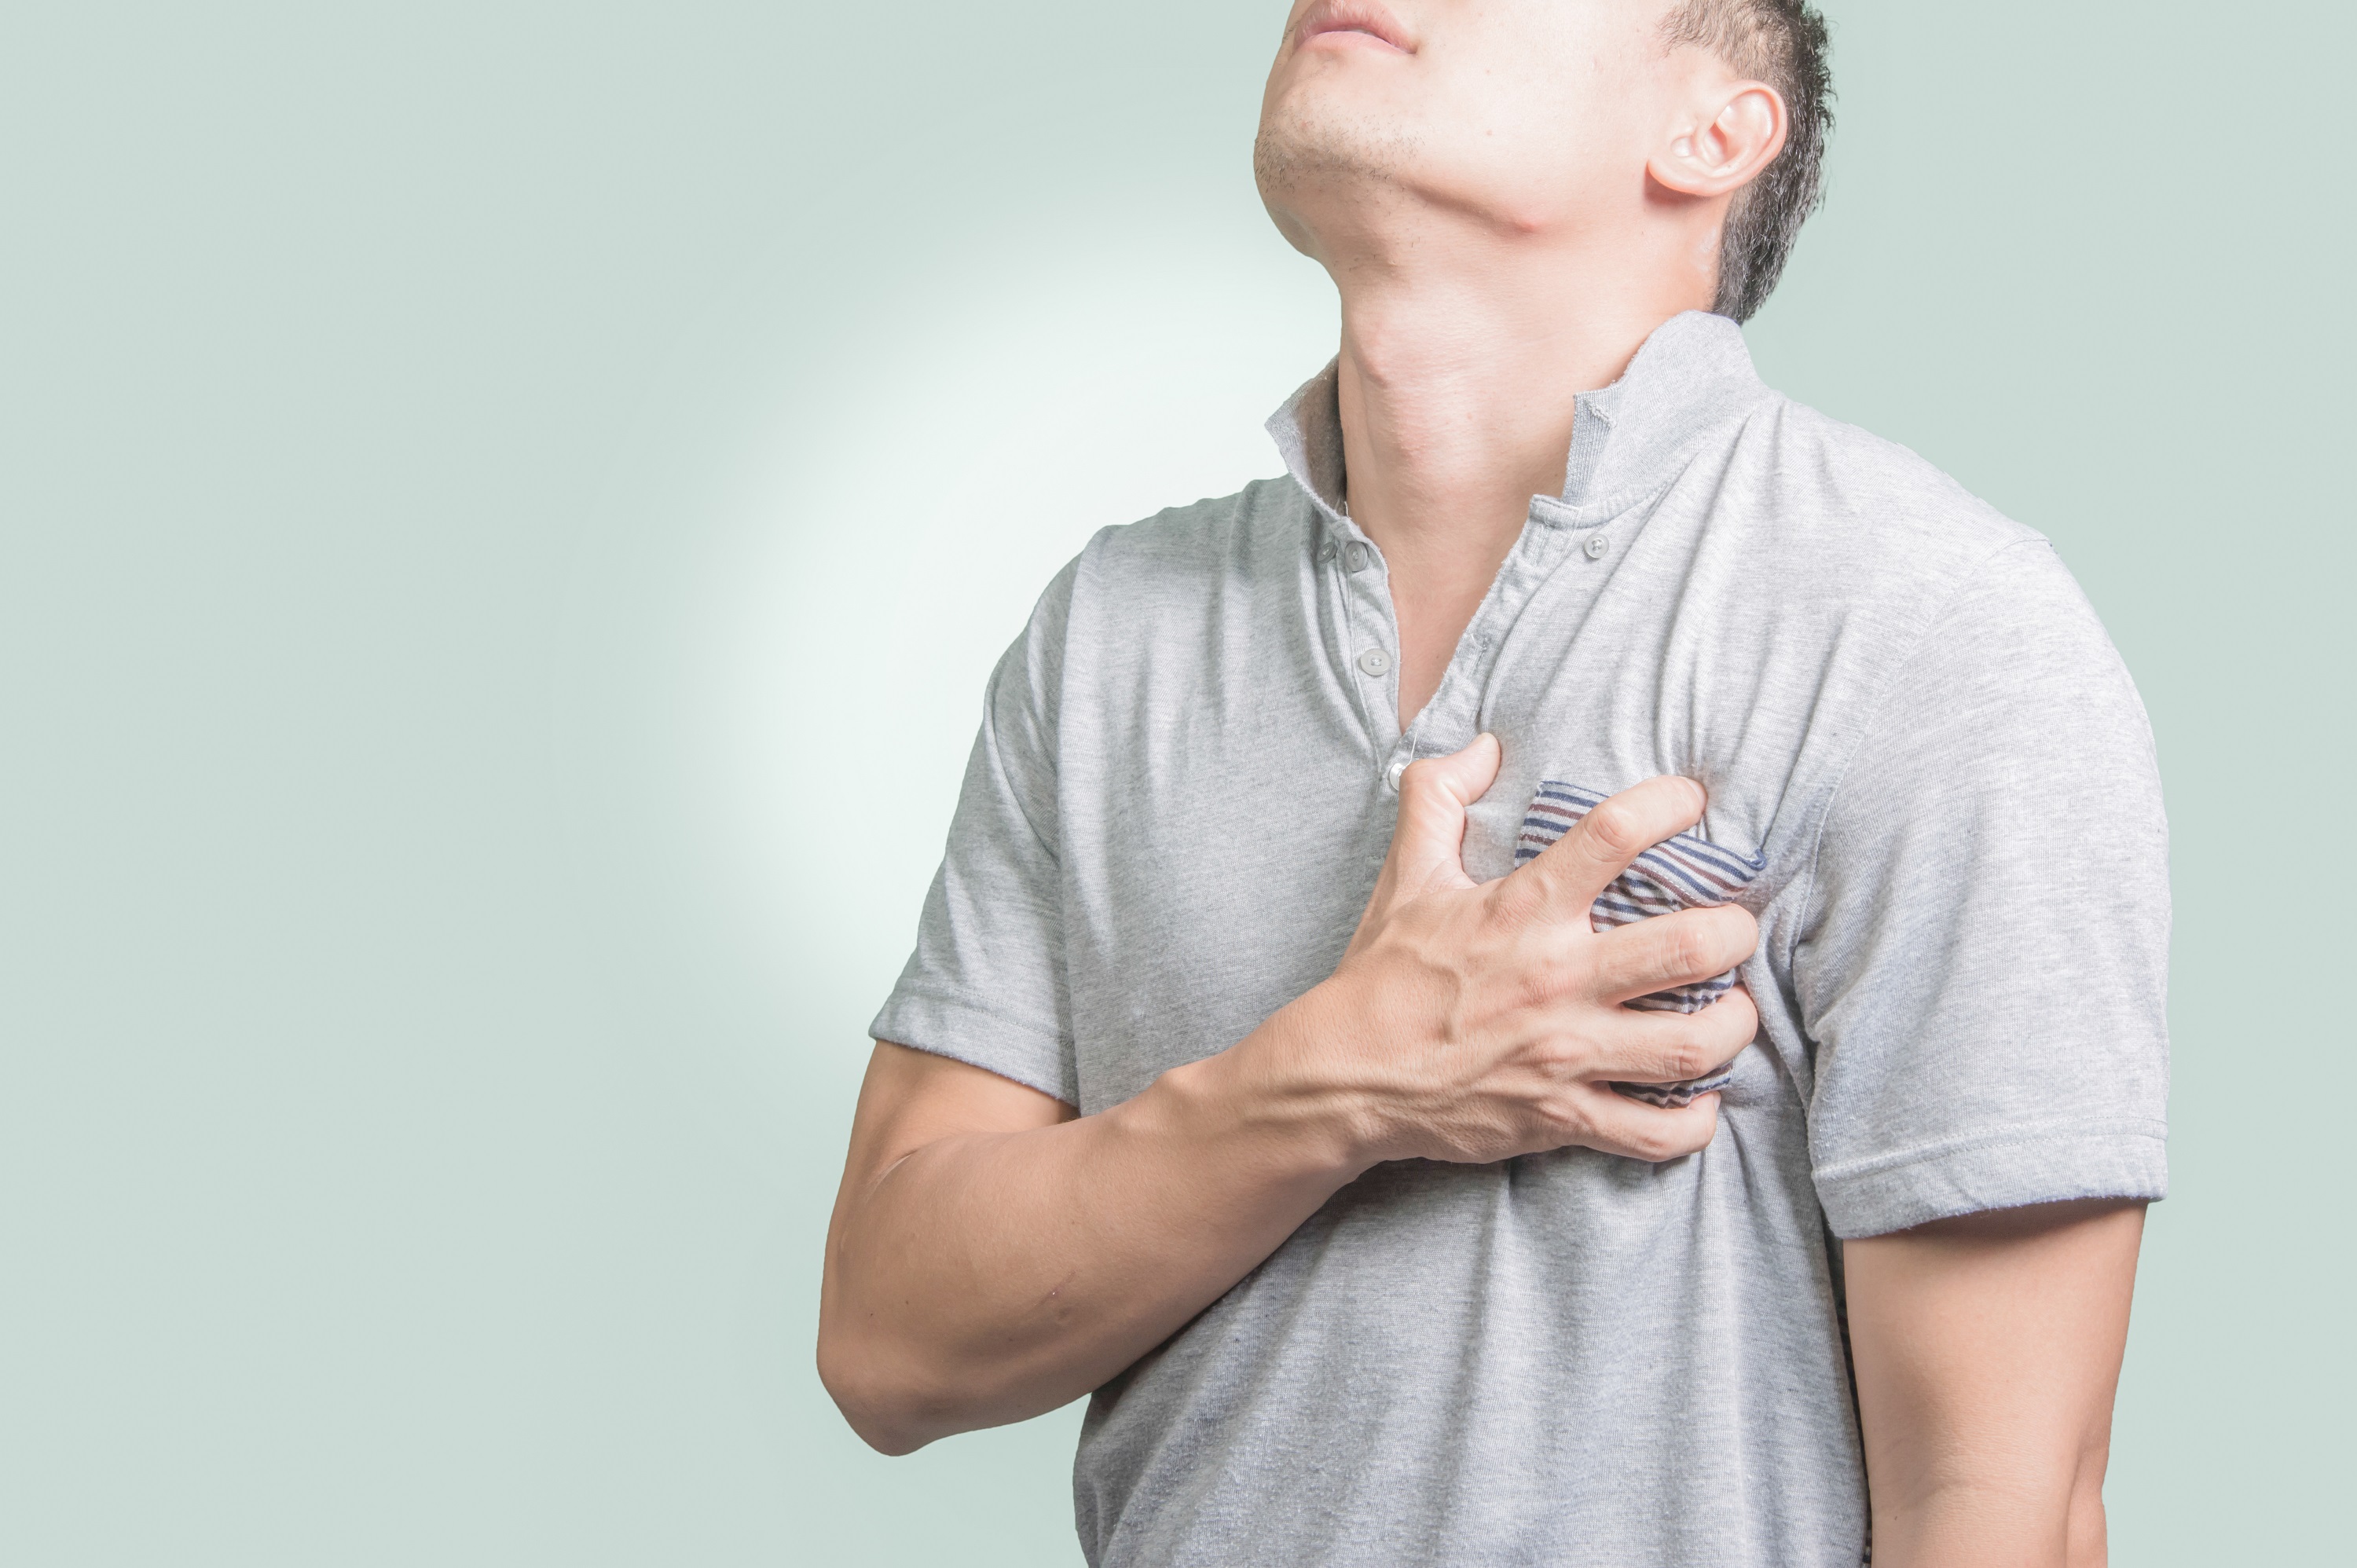 นวัตกรรมผ่าตัดบายพาสหัวใจ ด้วยเทคนิค “หัวใจไม่หยุดเต้น”